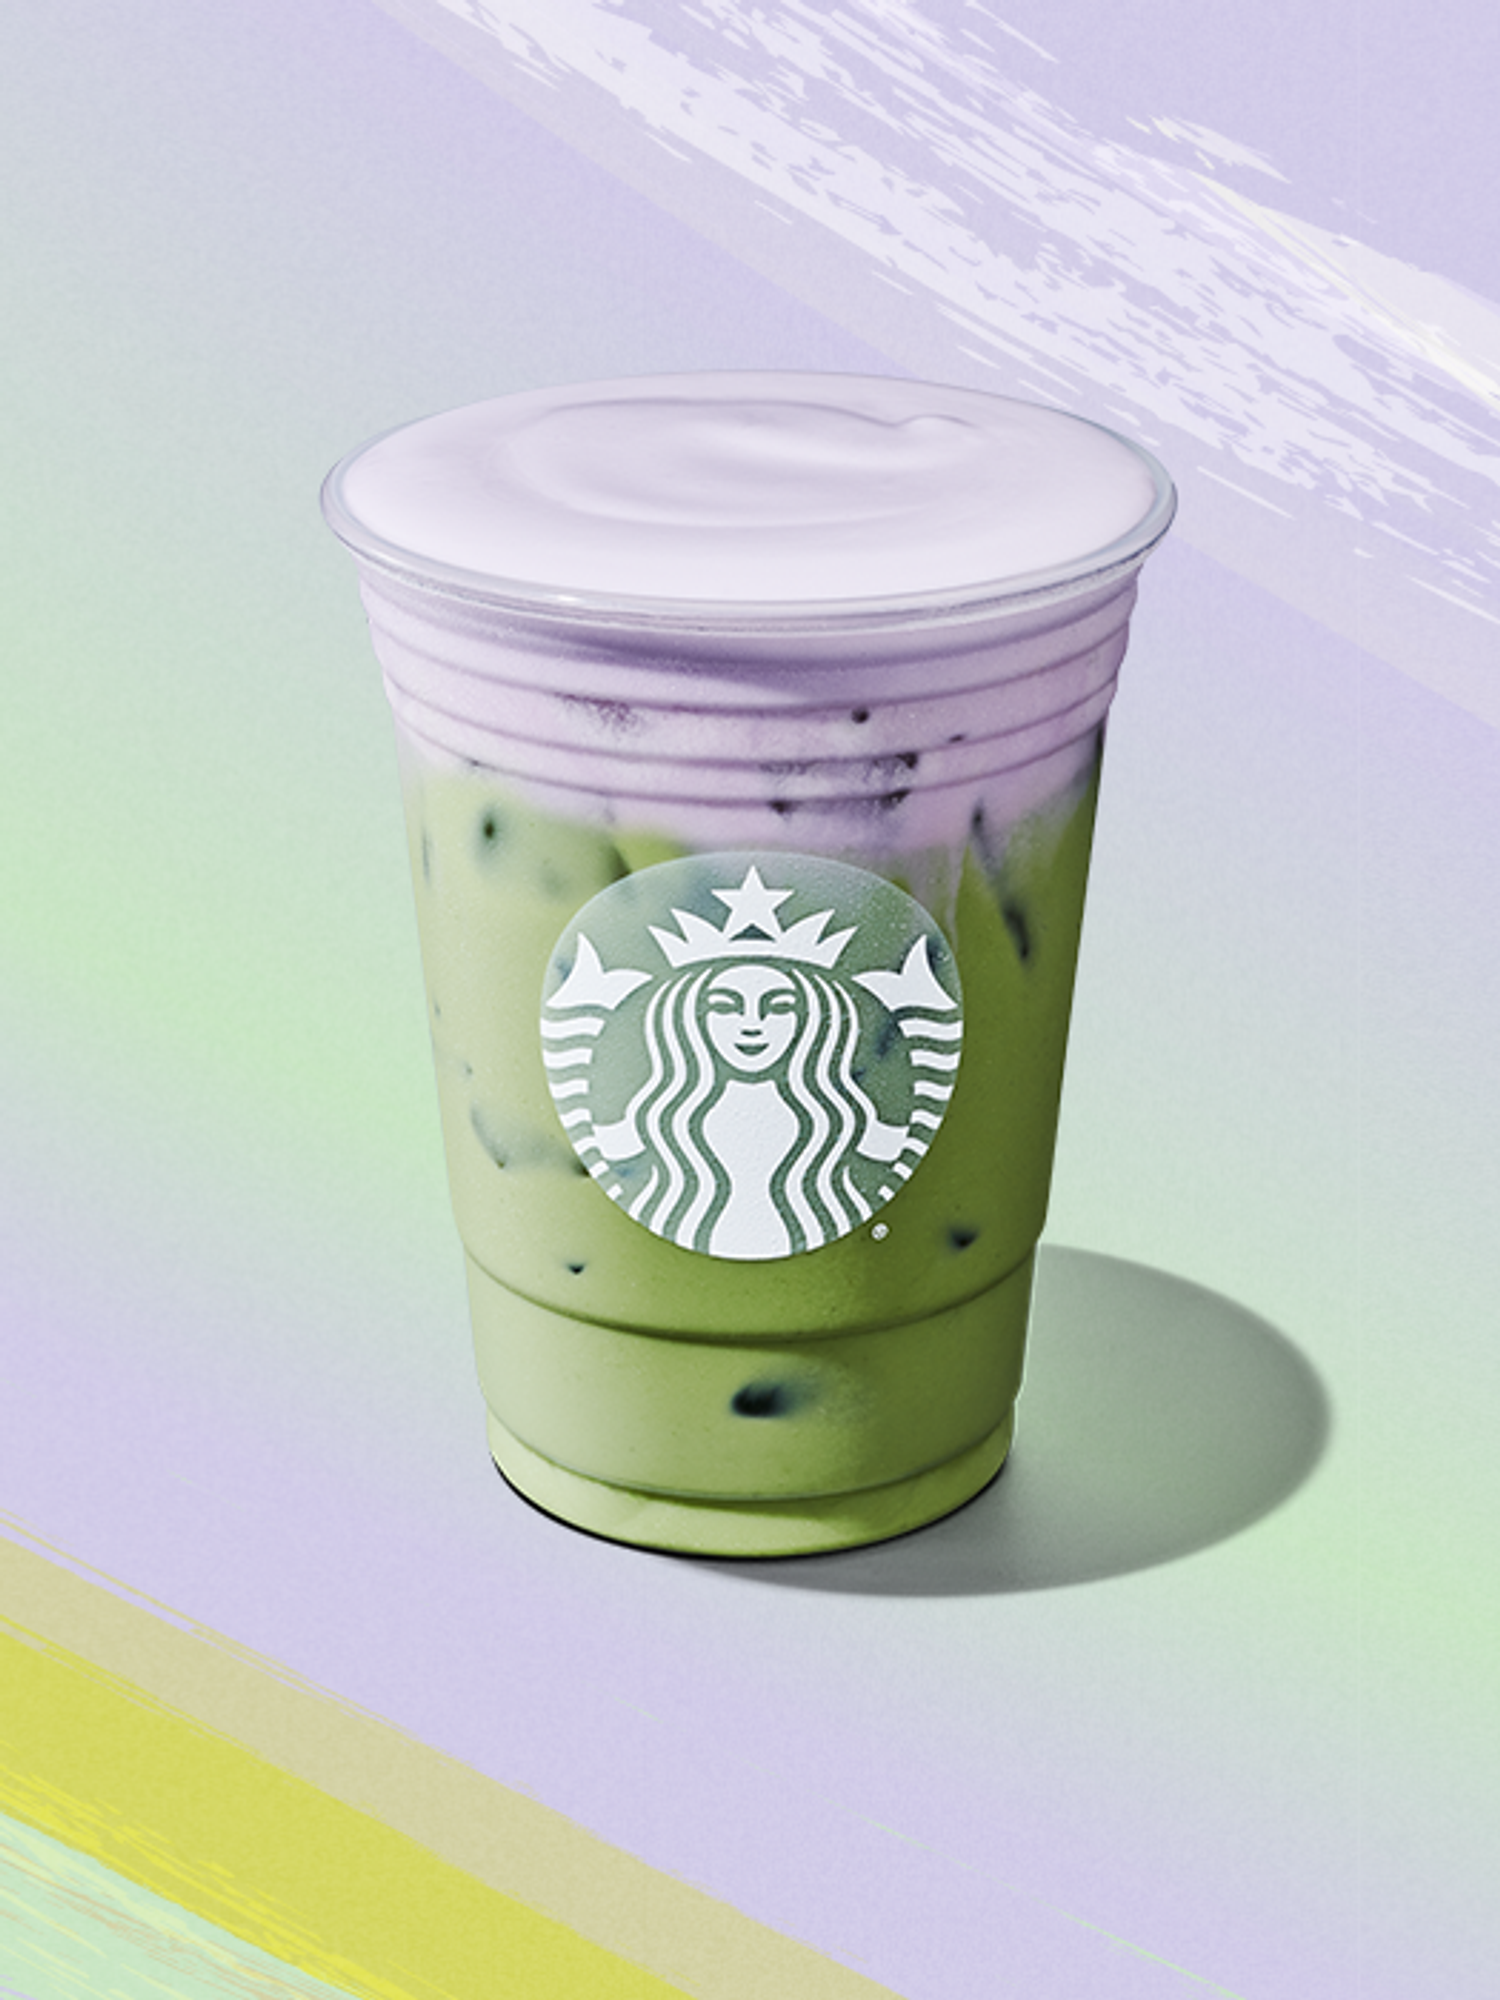 How does Starbucks Rewards work?